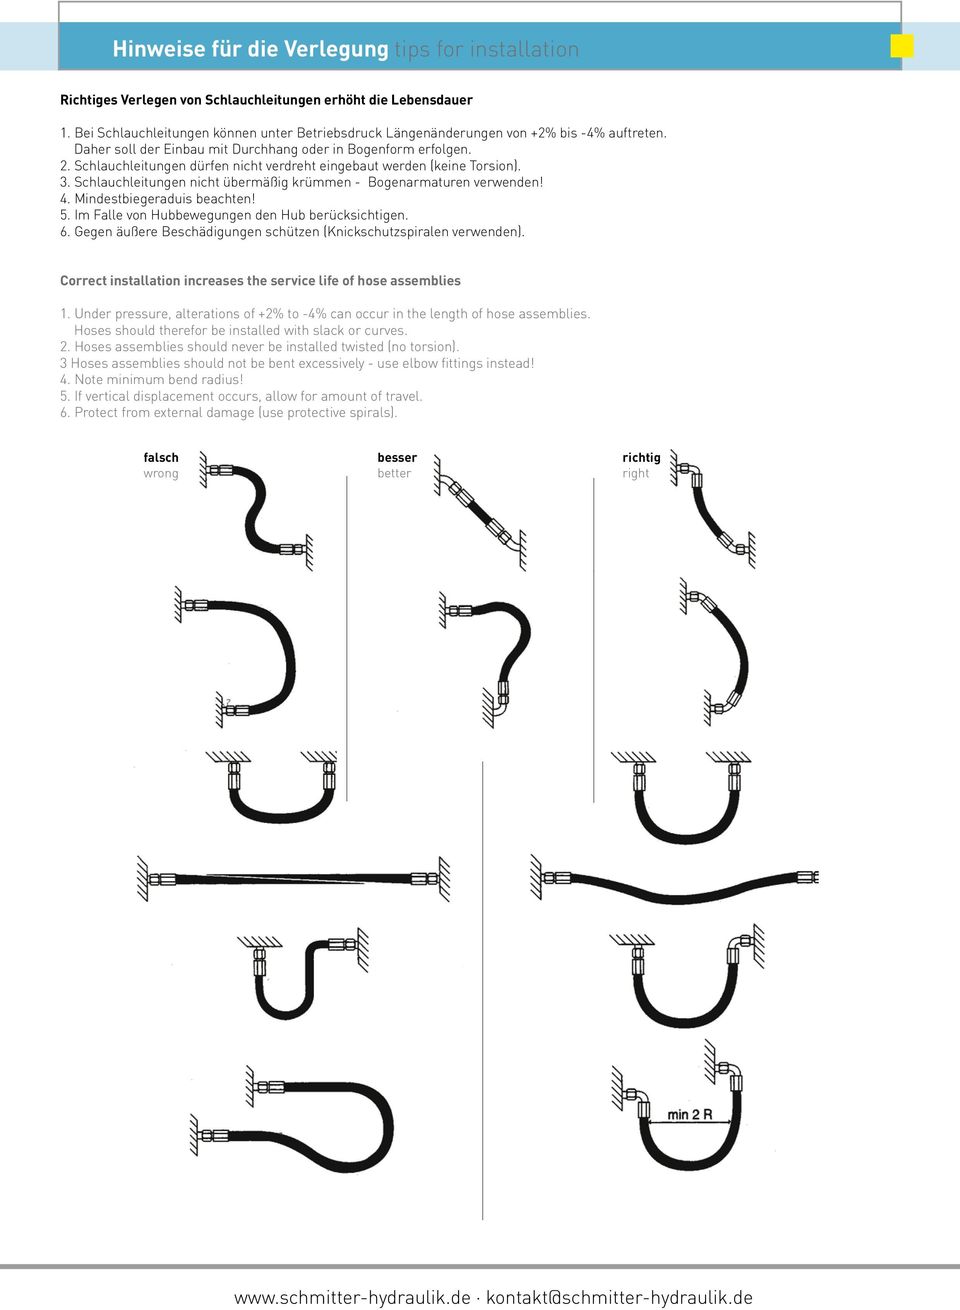 Schlauchleitungen dürfen nicht verdreht eingebaut werden (keine Torsion). 3. Schlauchleitungen nicht übermäßig krümmen - Bogenarmaturen verwenden! 4. Mindestbiegeraduis beachten! 5.